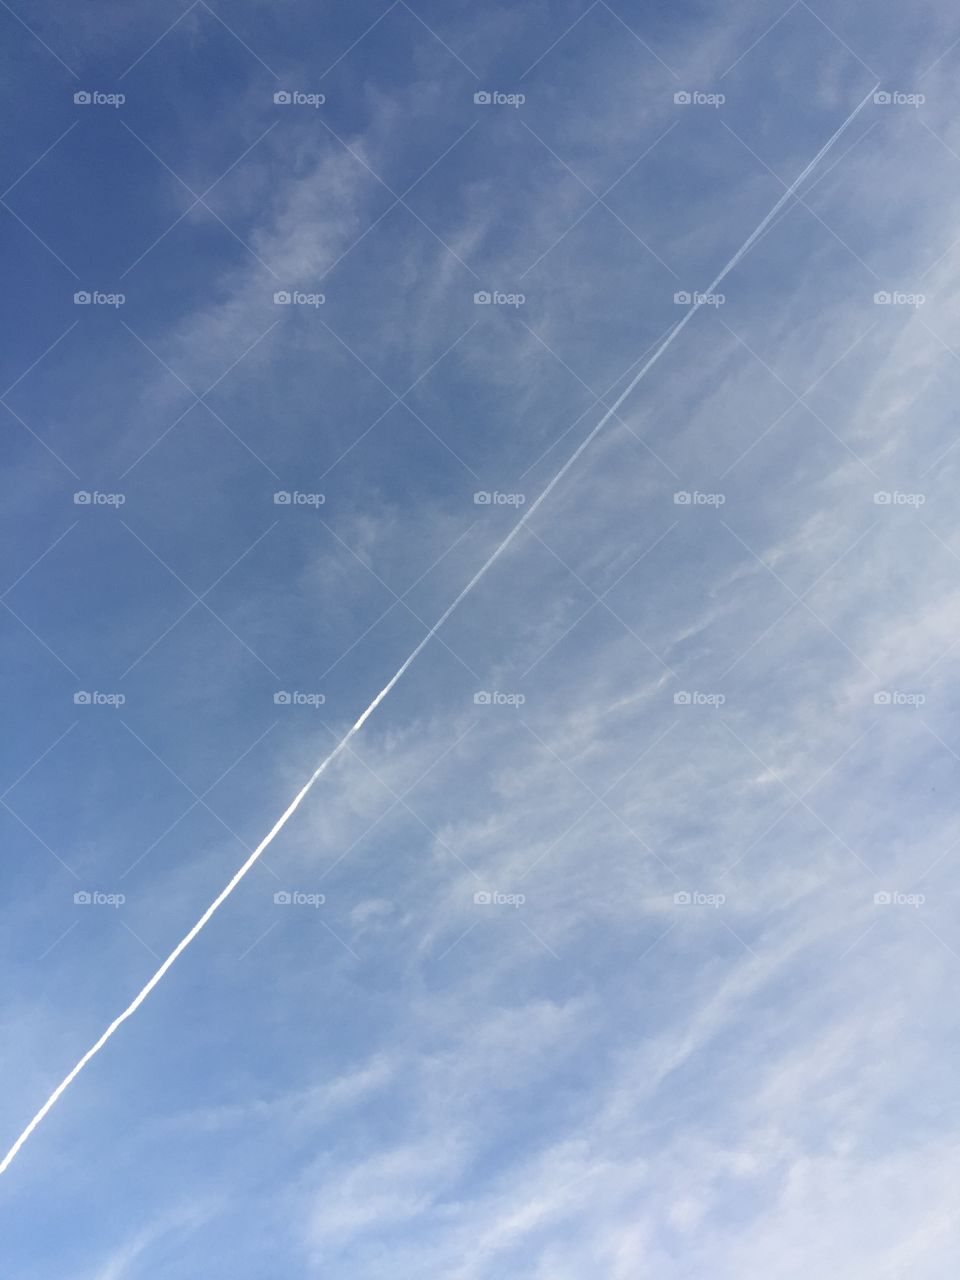 Jet ran through the sky